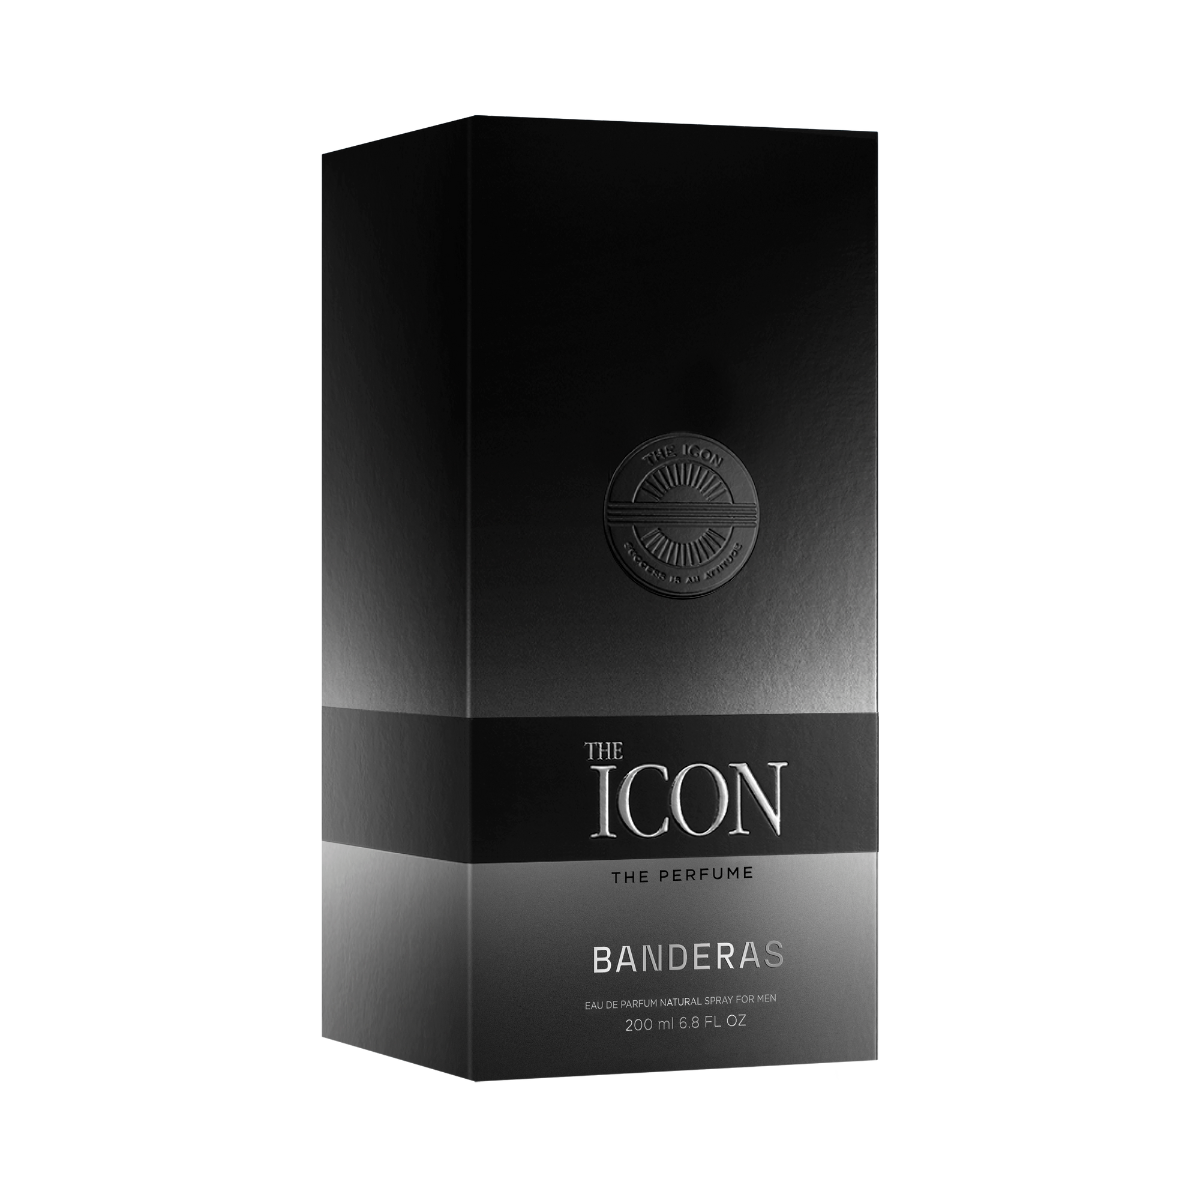 Antonio Banderas The Icon The Perfume Eau De Parfum